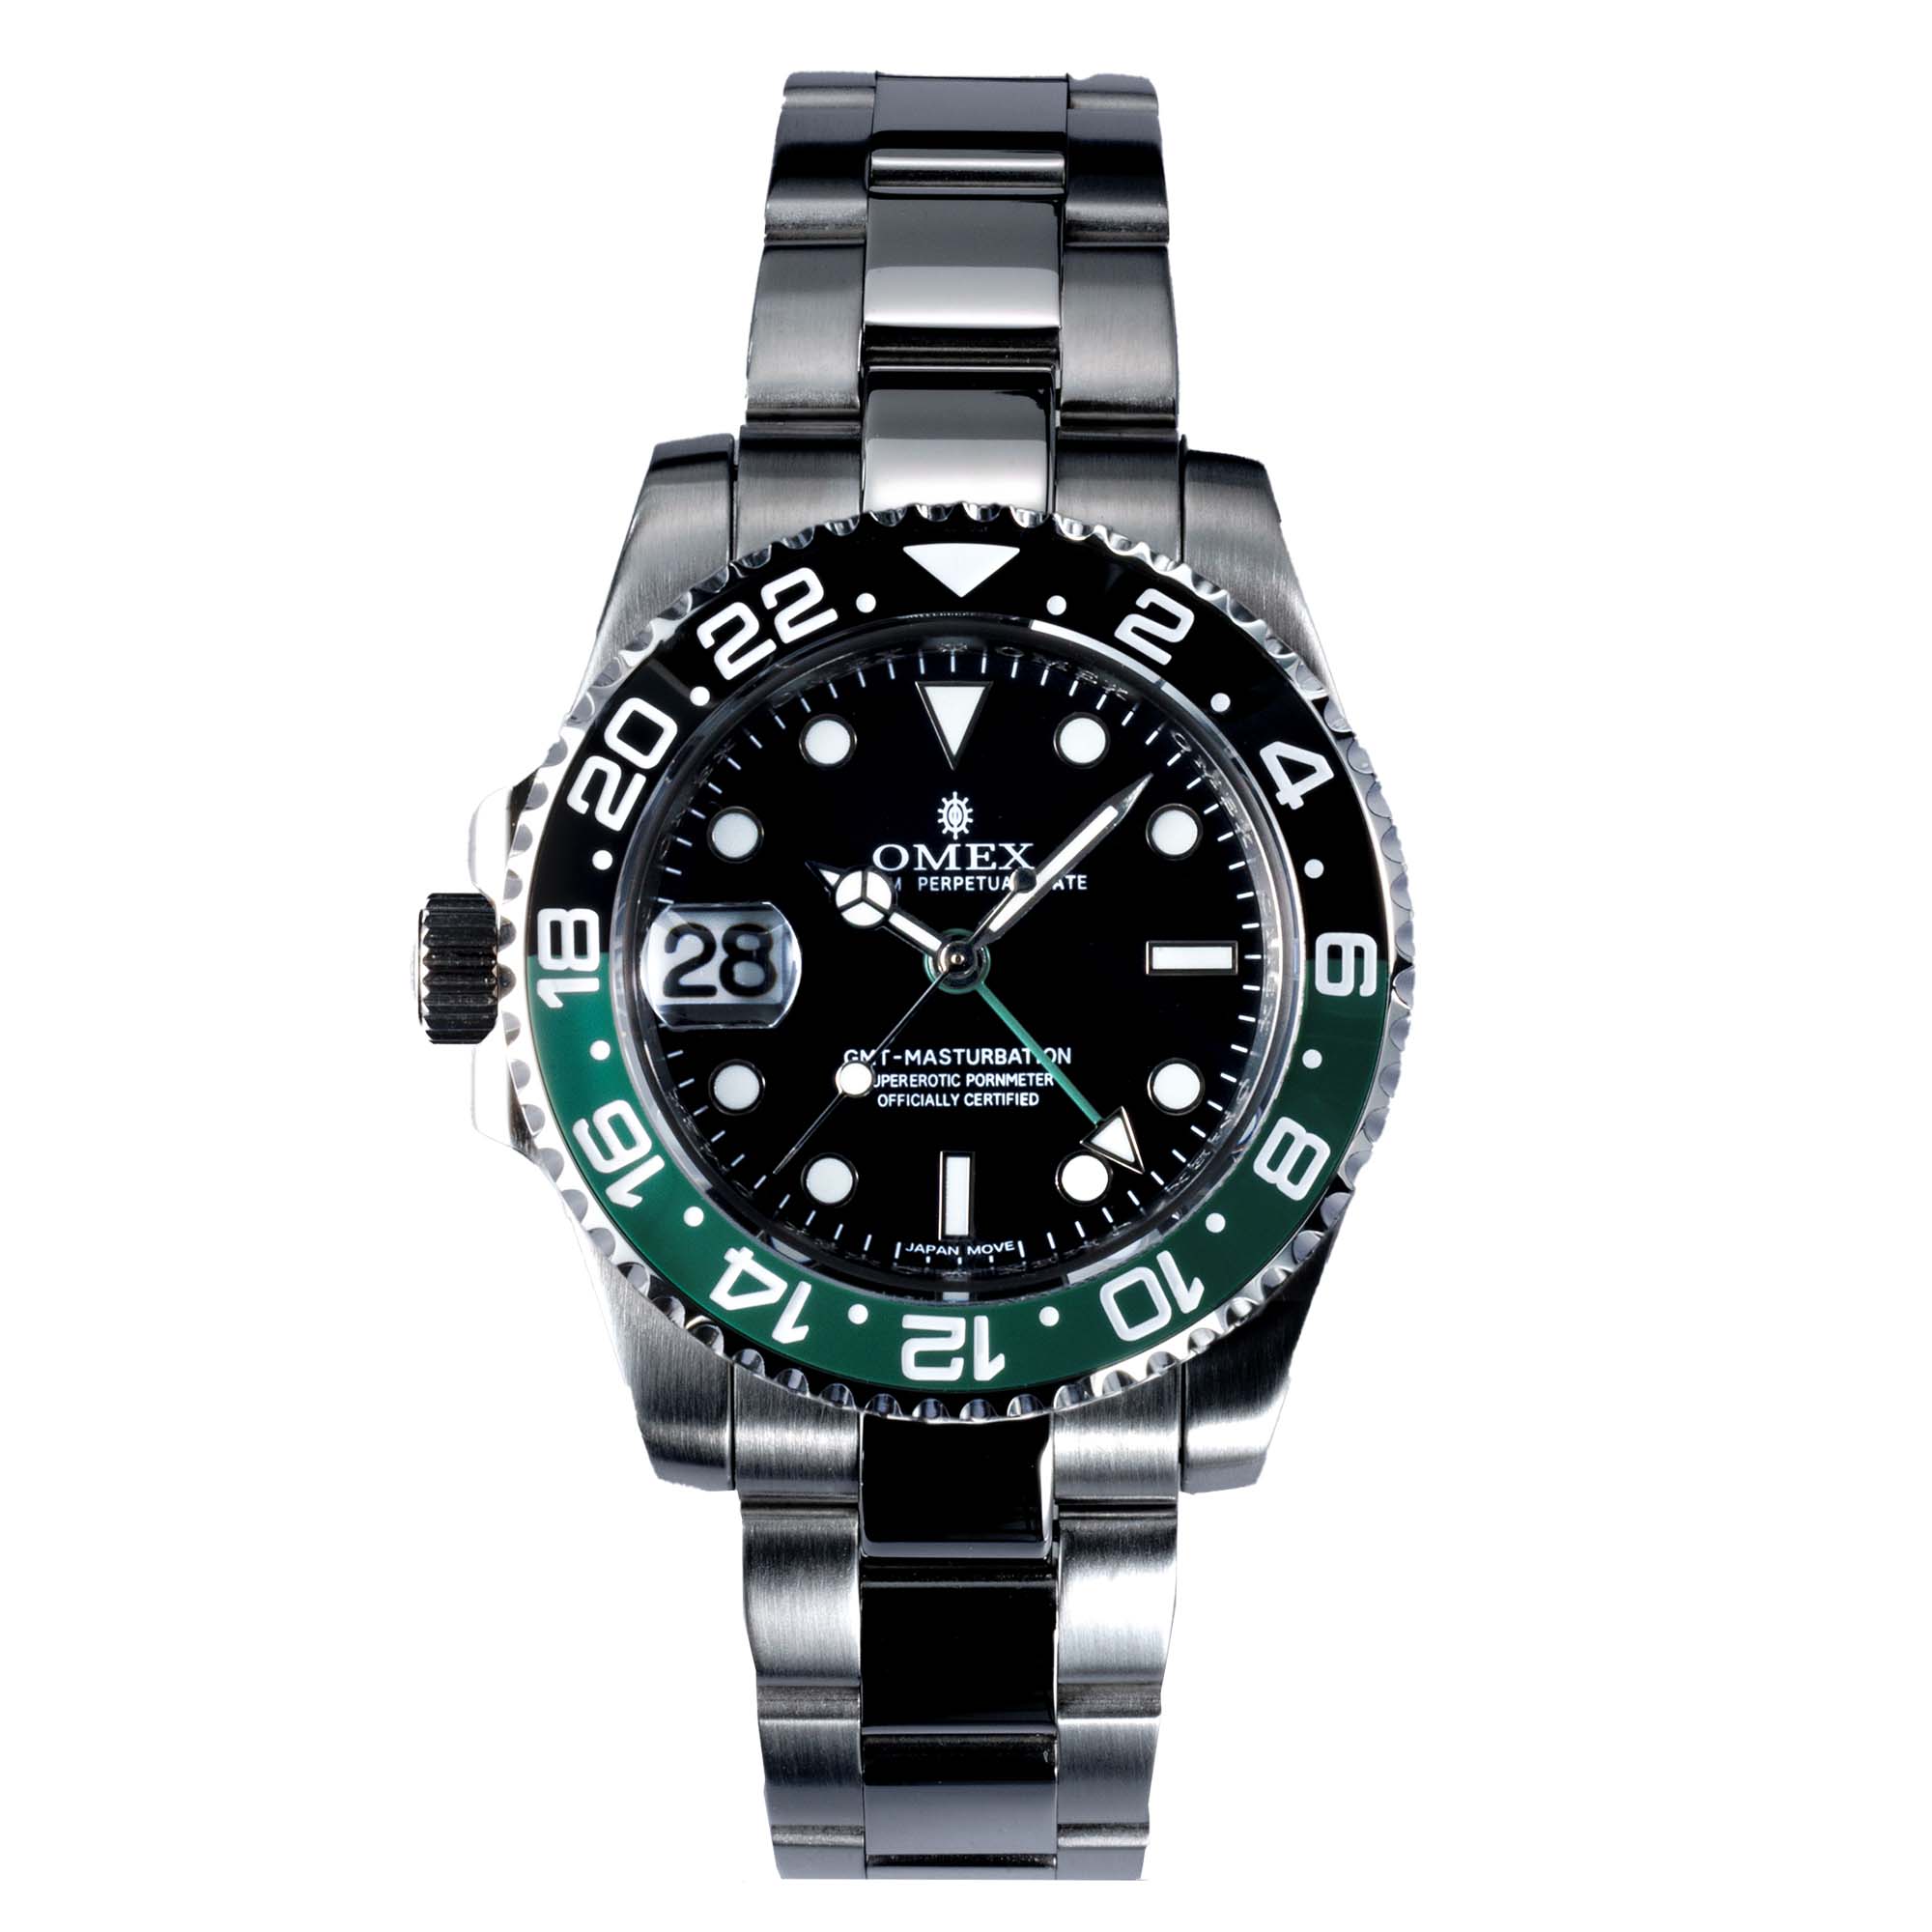 【レビュー特典付き】ジーエムティーマスターB 機械式 自動巻き SEIKO-NH34 メンズ腕時計 日常生活用強化防水 ブランド 限定腕時計  ネット通販 スーツ ビジネス